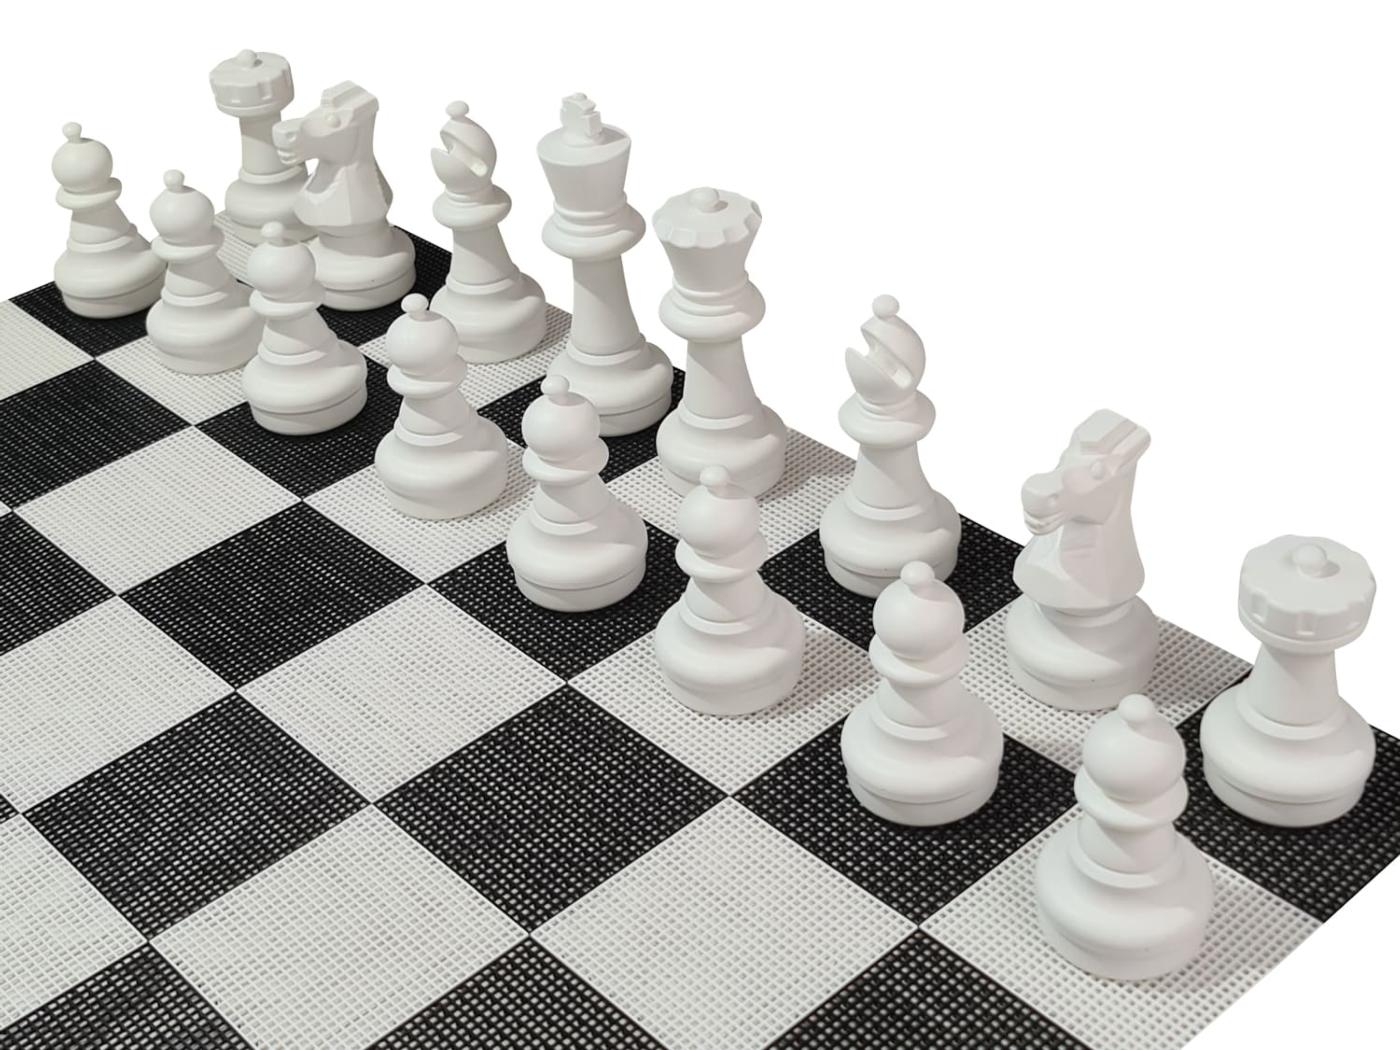 Juego de ajedrez gigante con tablero rígido gigante incluido piezas blancas sobre tablero